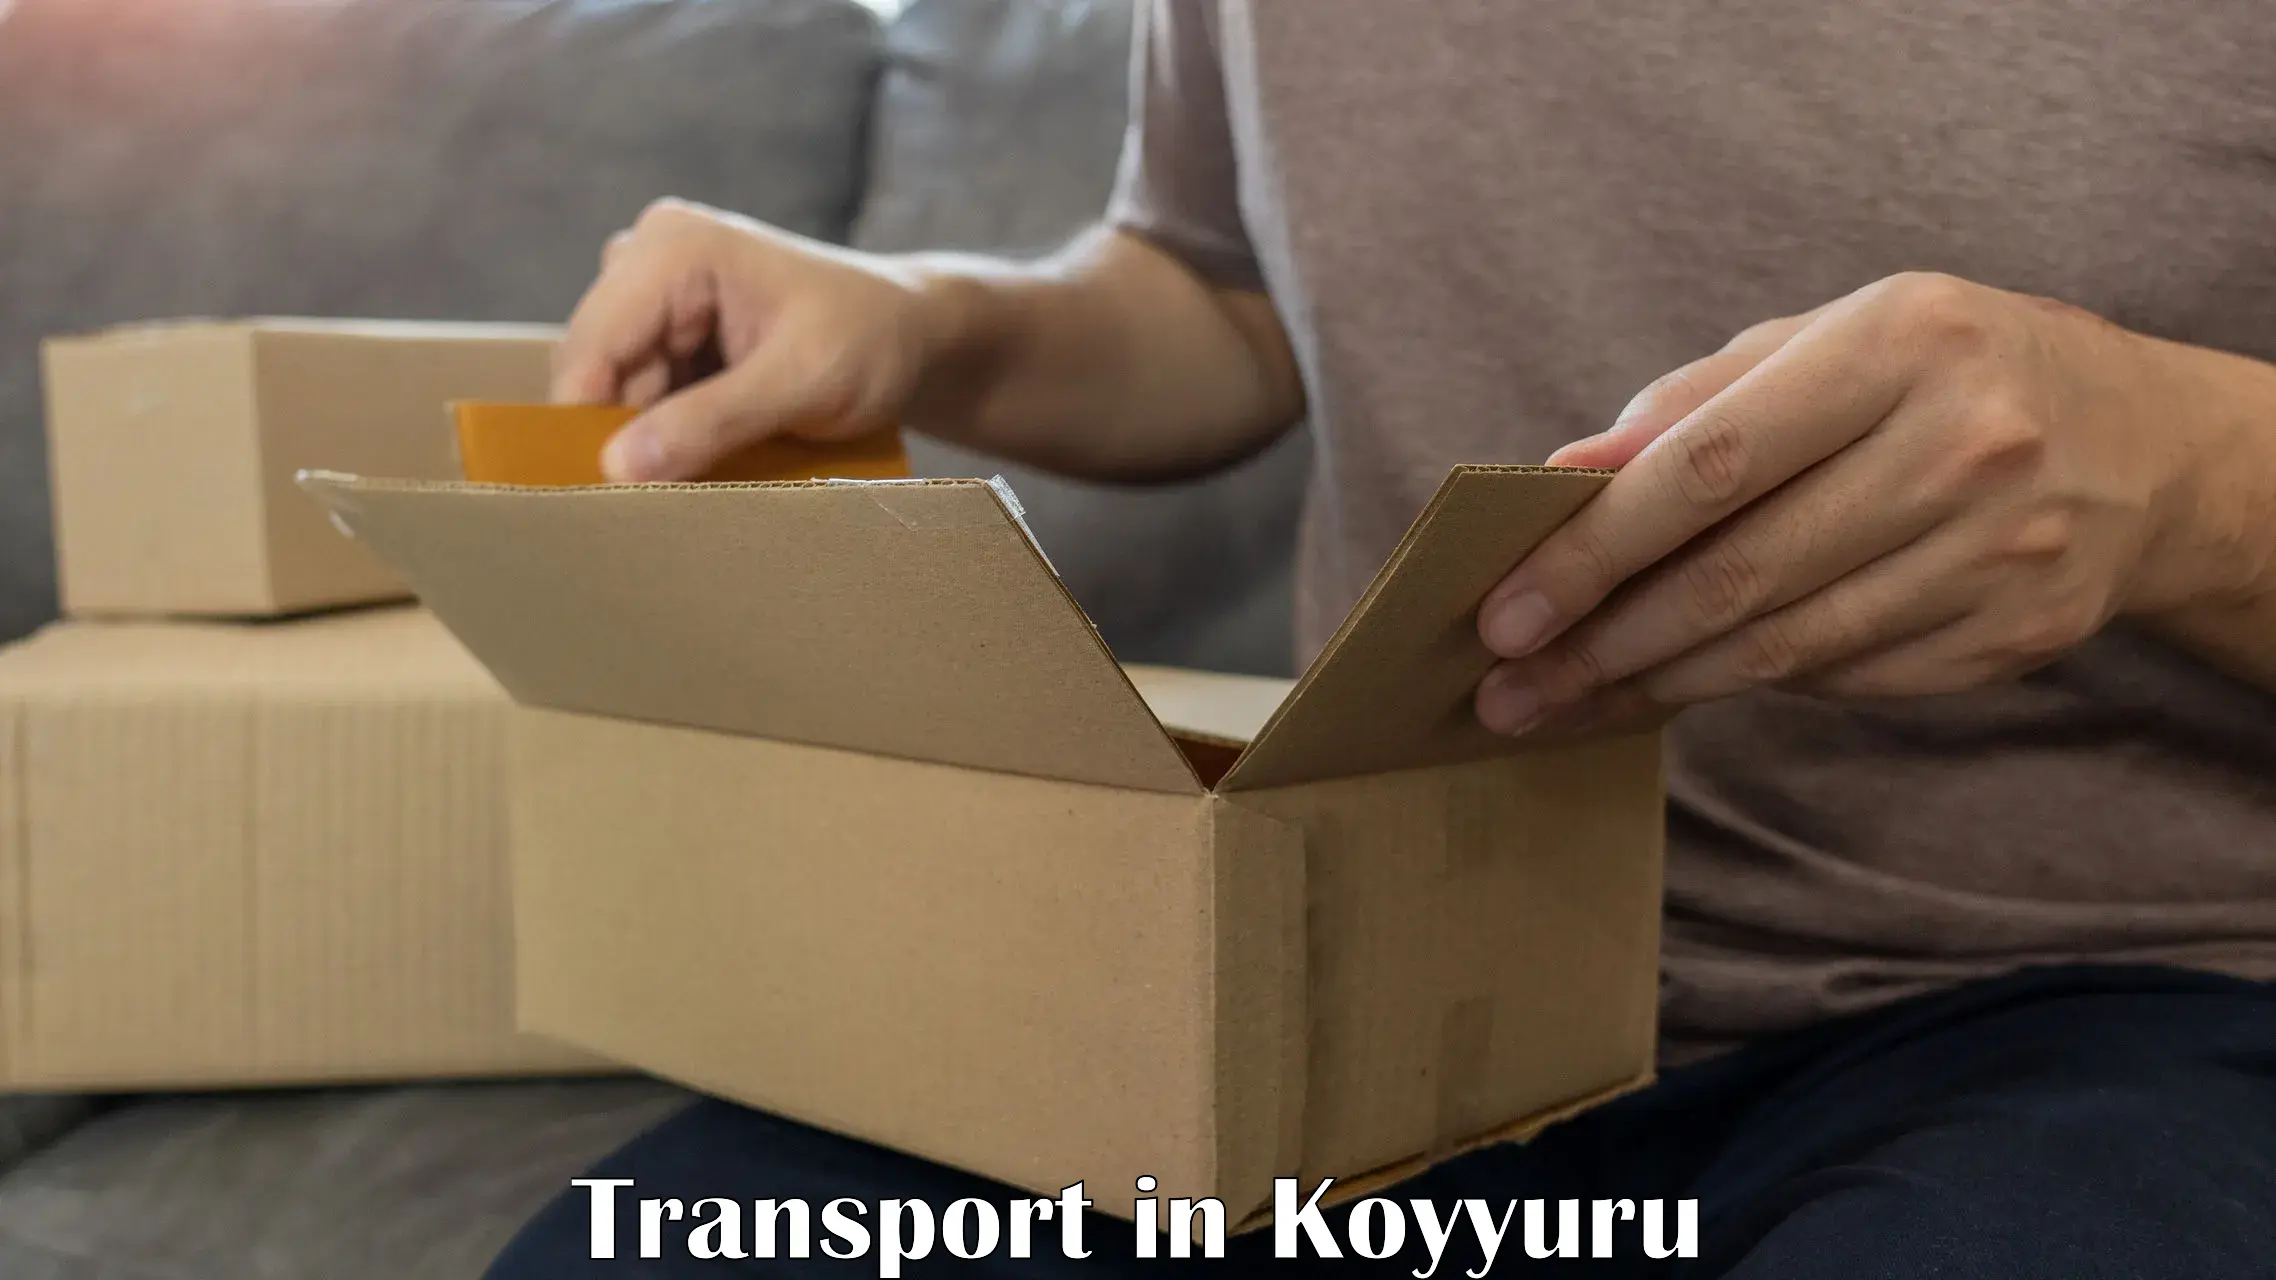 Vehicle courier services in Koyyuru